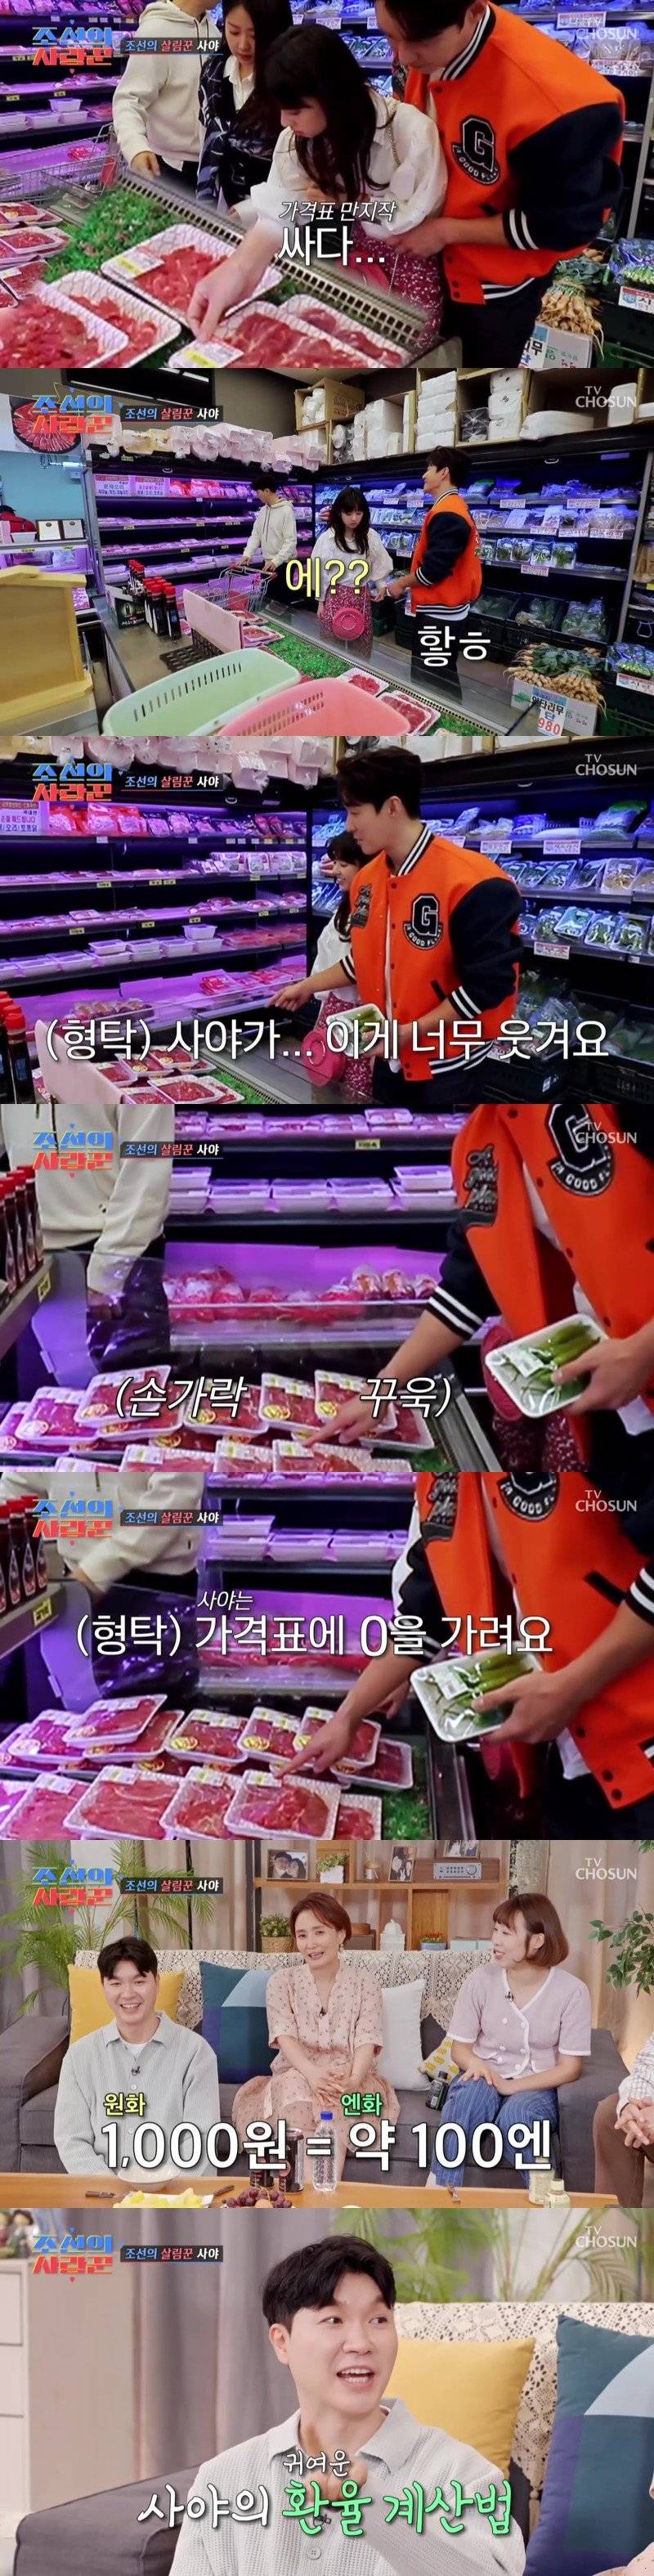 일본인이 한국 가격표 보는법.jpg